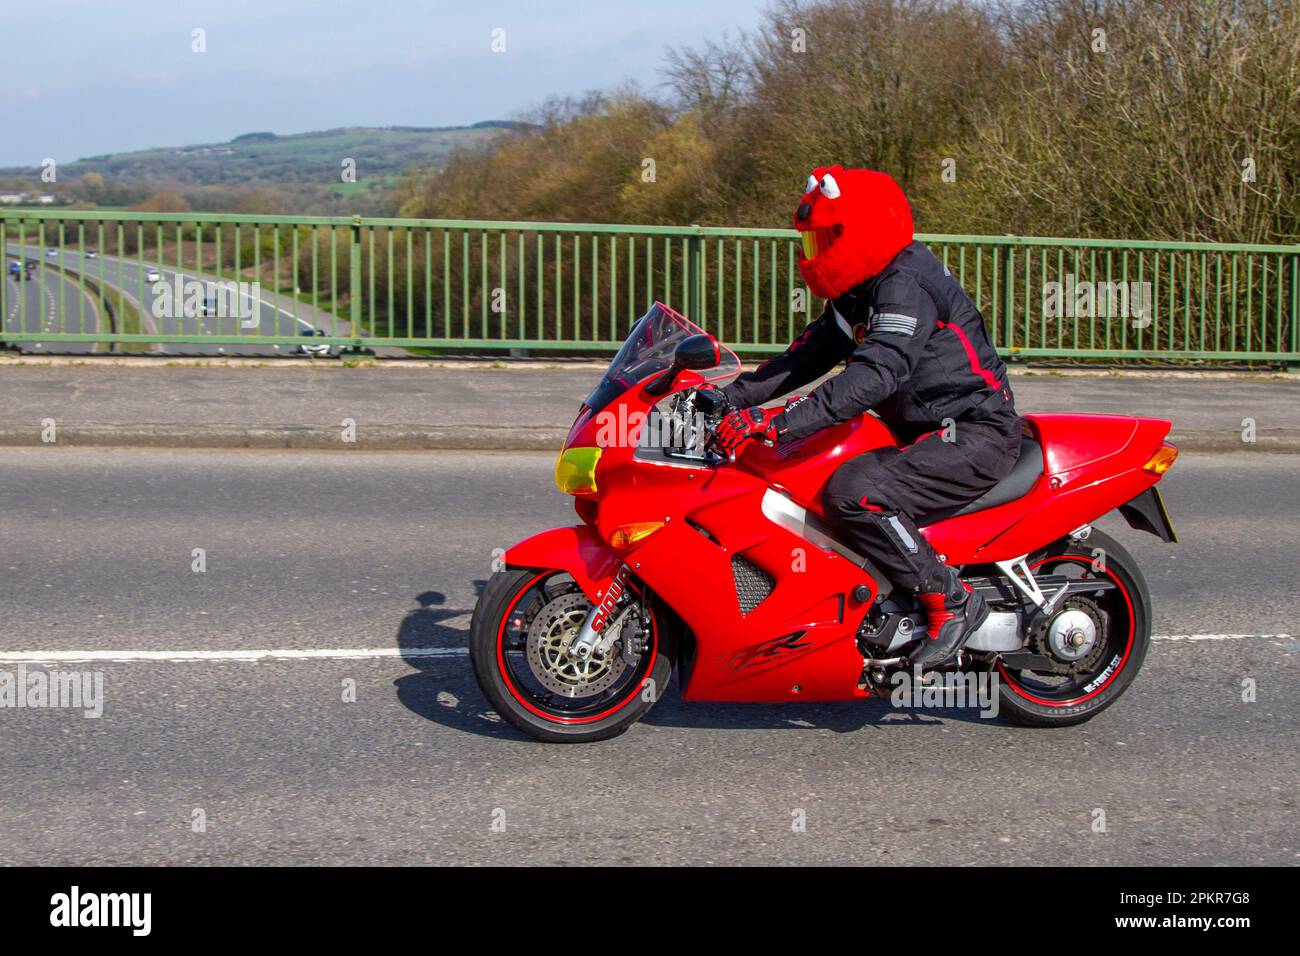 Motorcycle sports immagini e fotografie stock ad alta risoluzione - Alamy